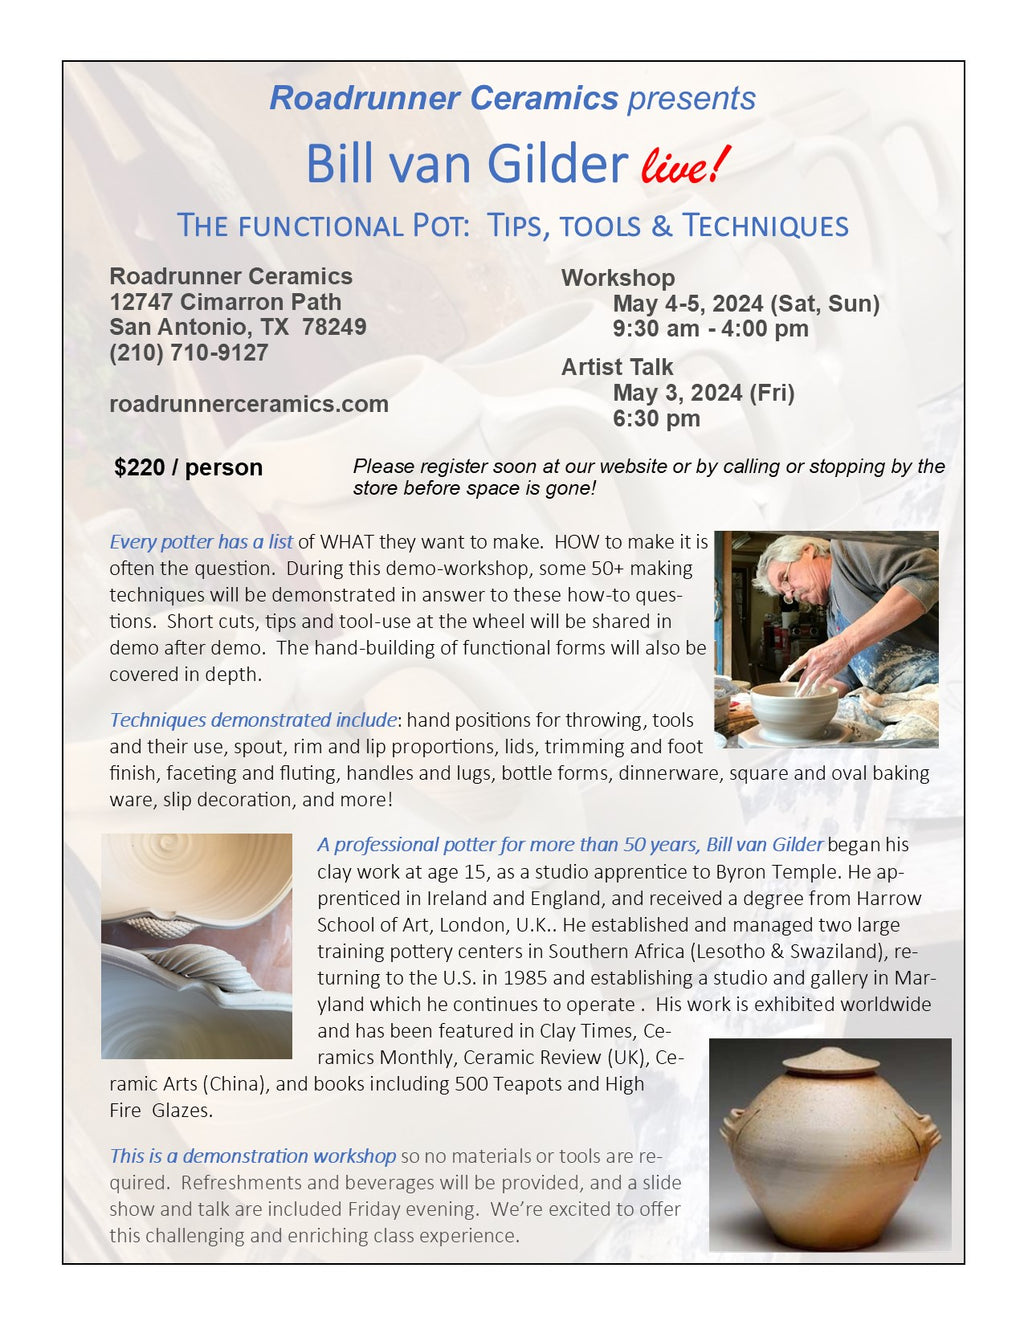 Bill van Gilder live! - The Functional Pot:  Tips, Tools & Techniques